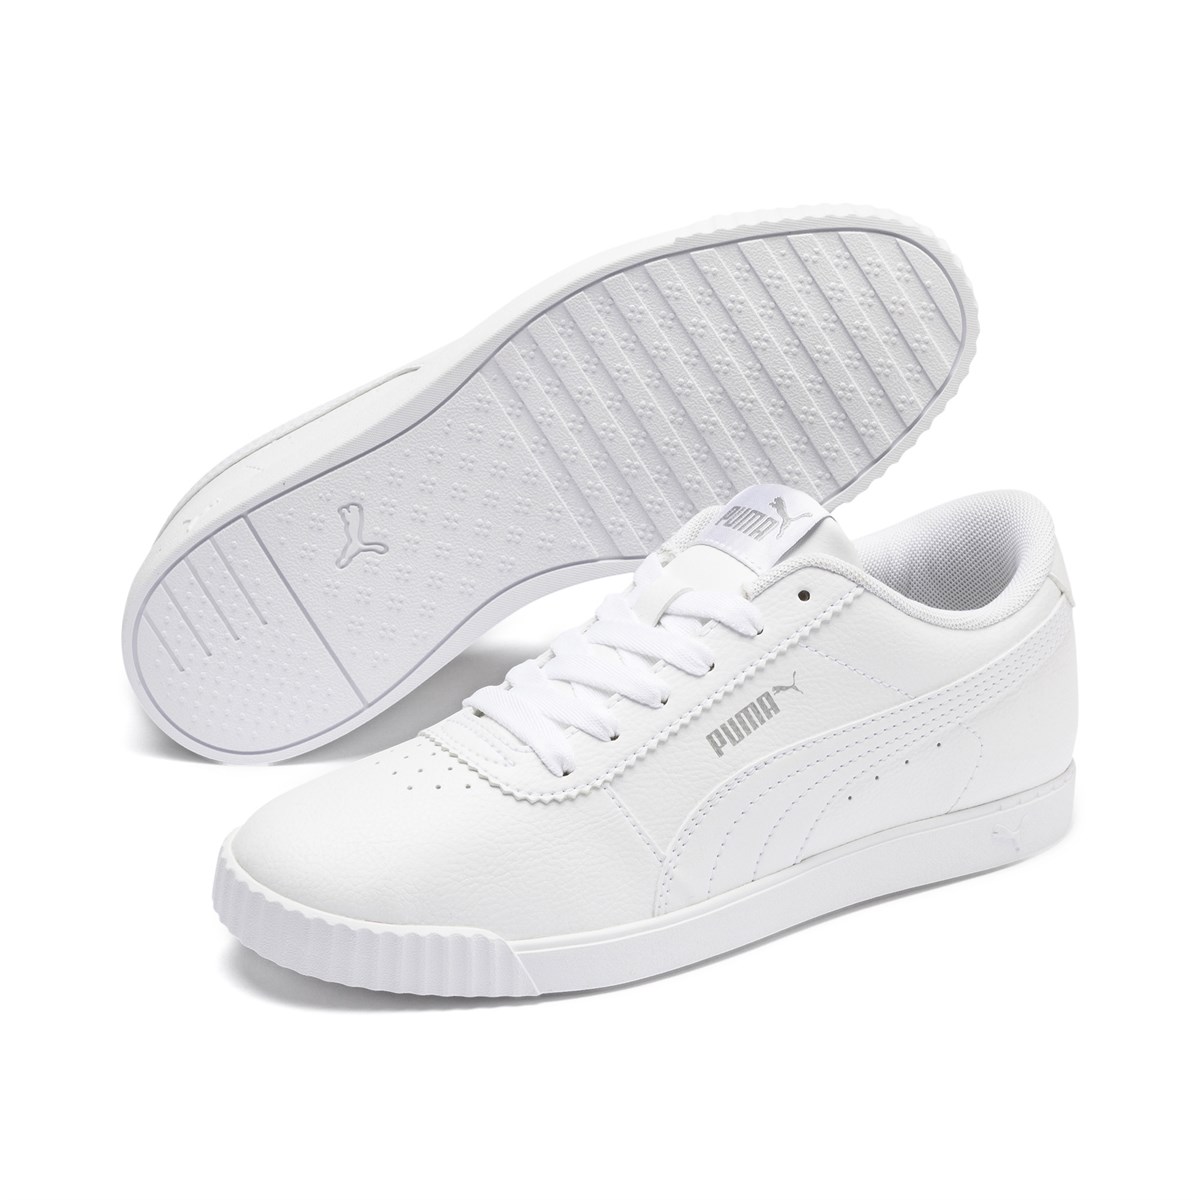 Puma Carina Slim SL Beyaz Sneaker Bayan Spor Ayakkabı 370548-02